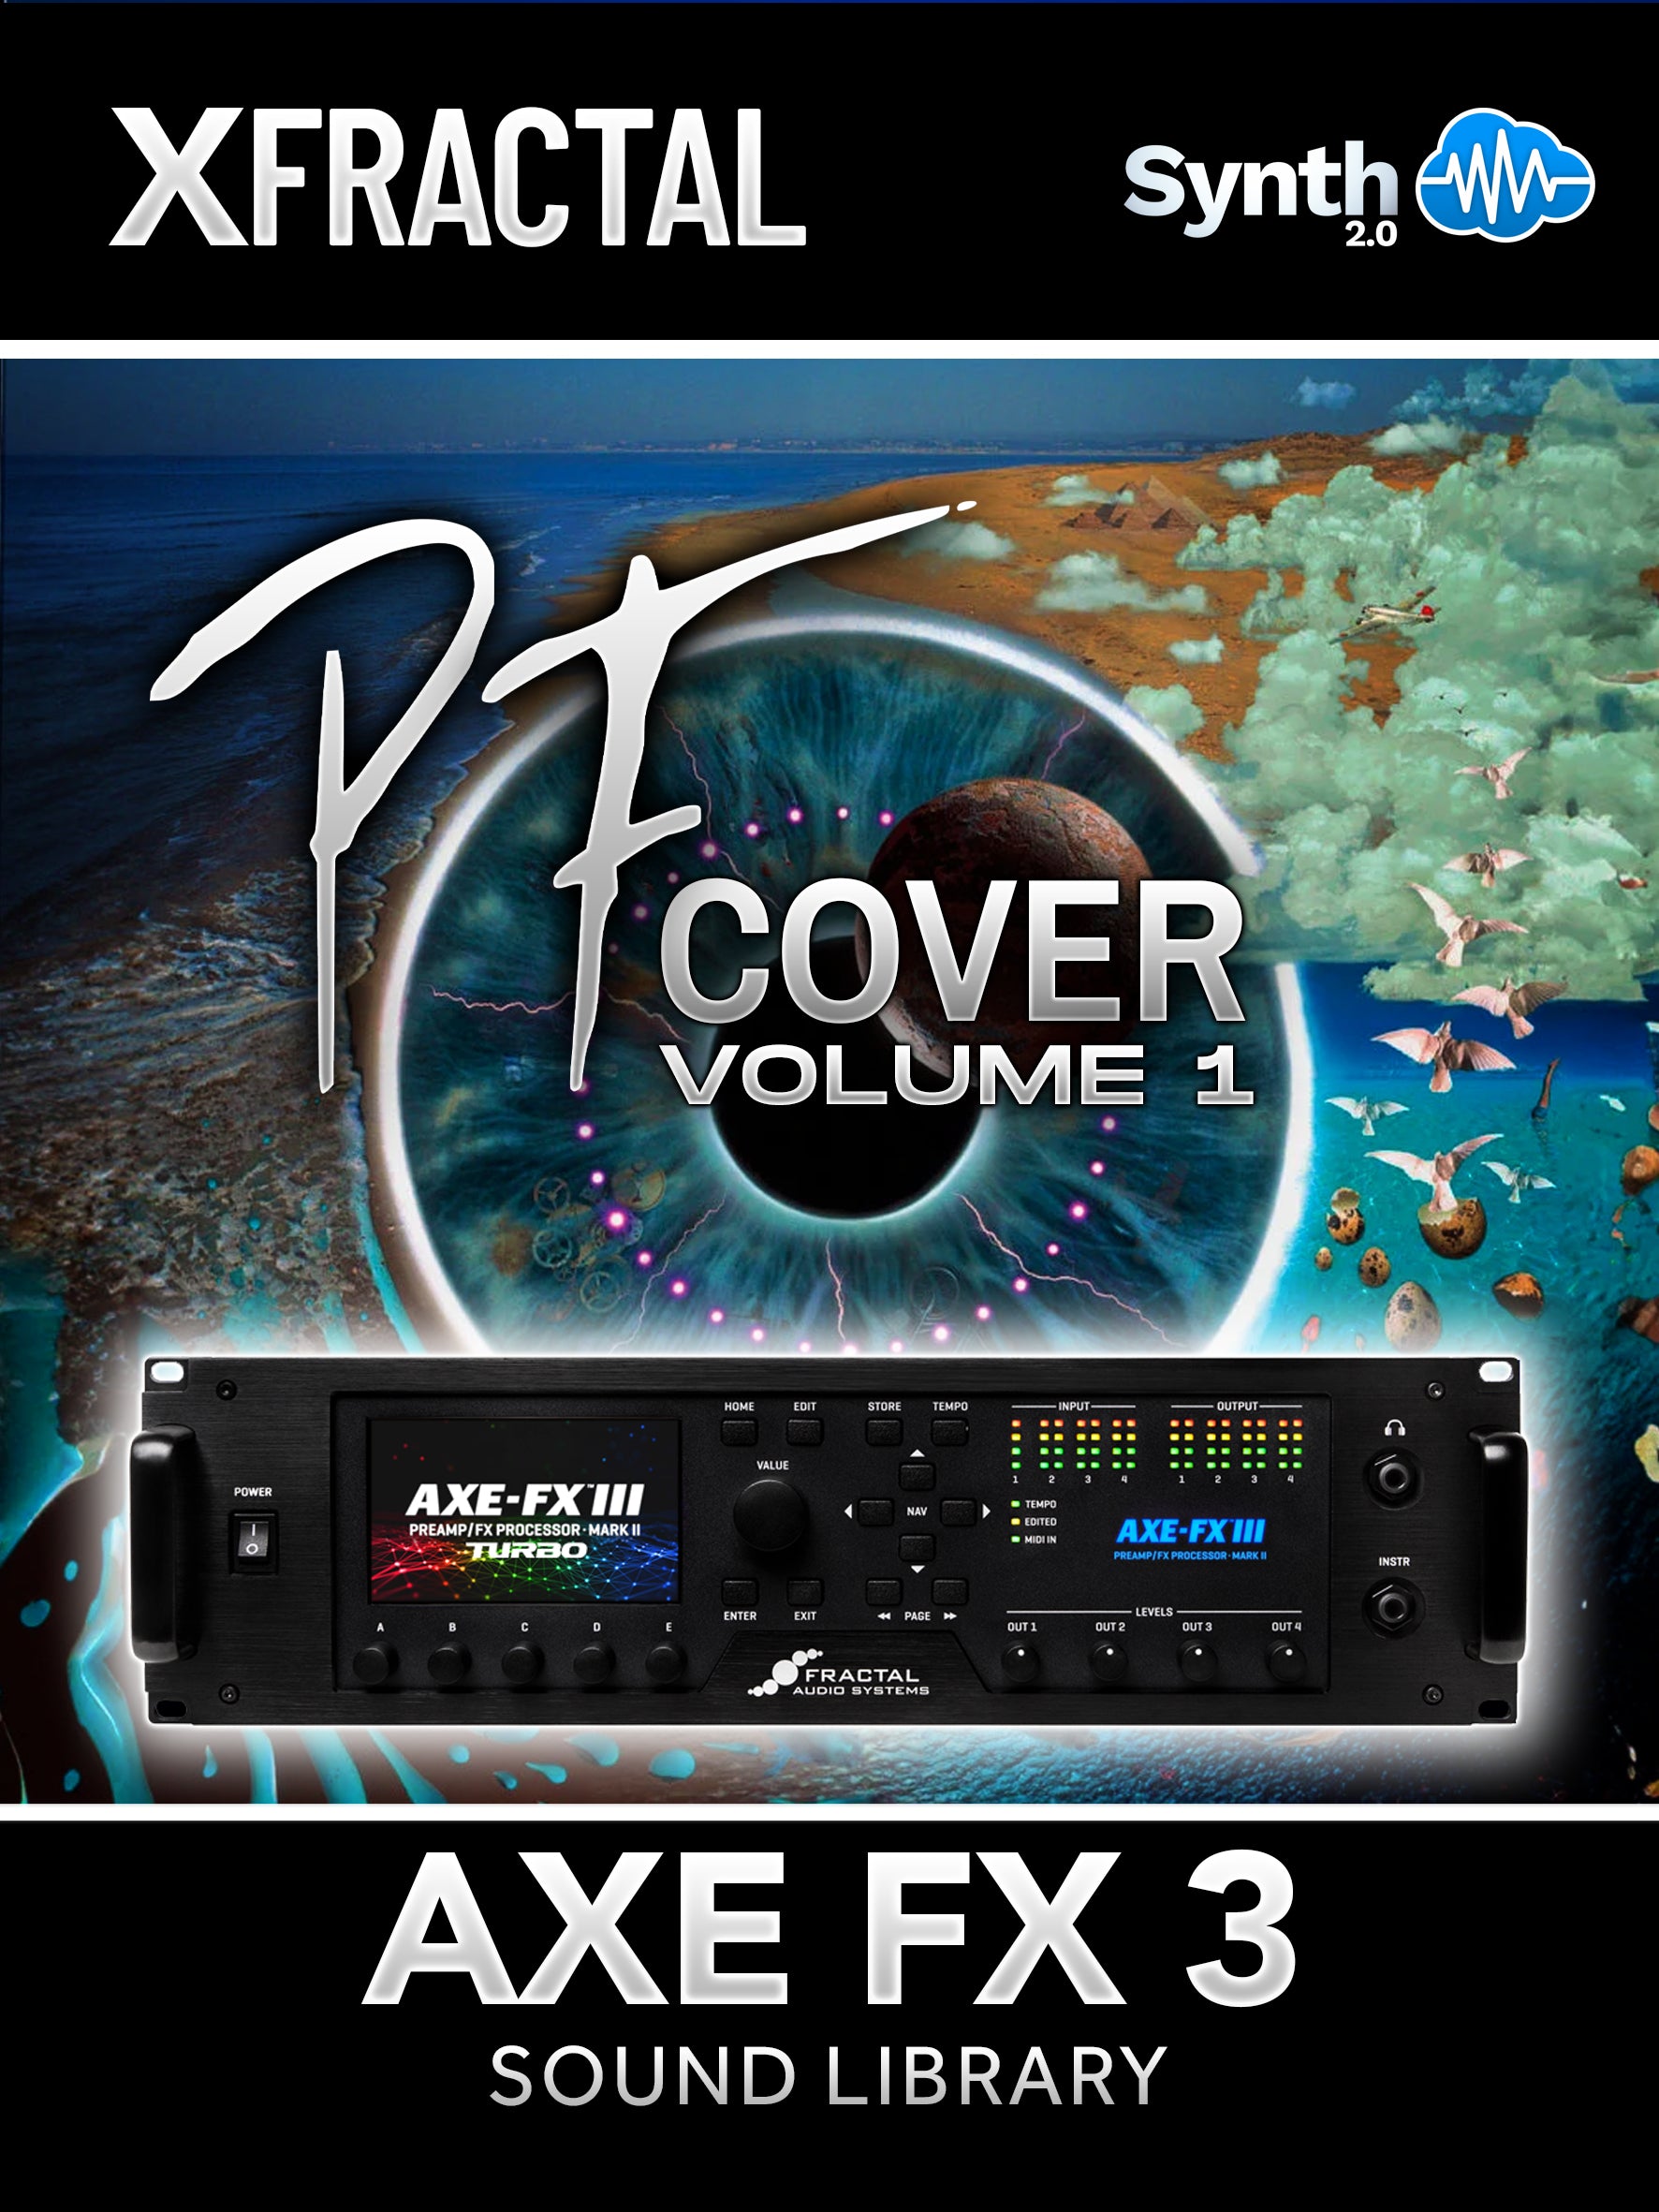 FRT001 - PF Cover V1 - Fractal Axe-Fx III ( 21 scenes )